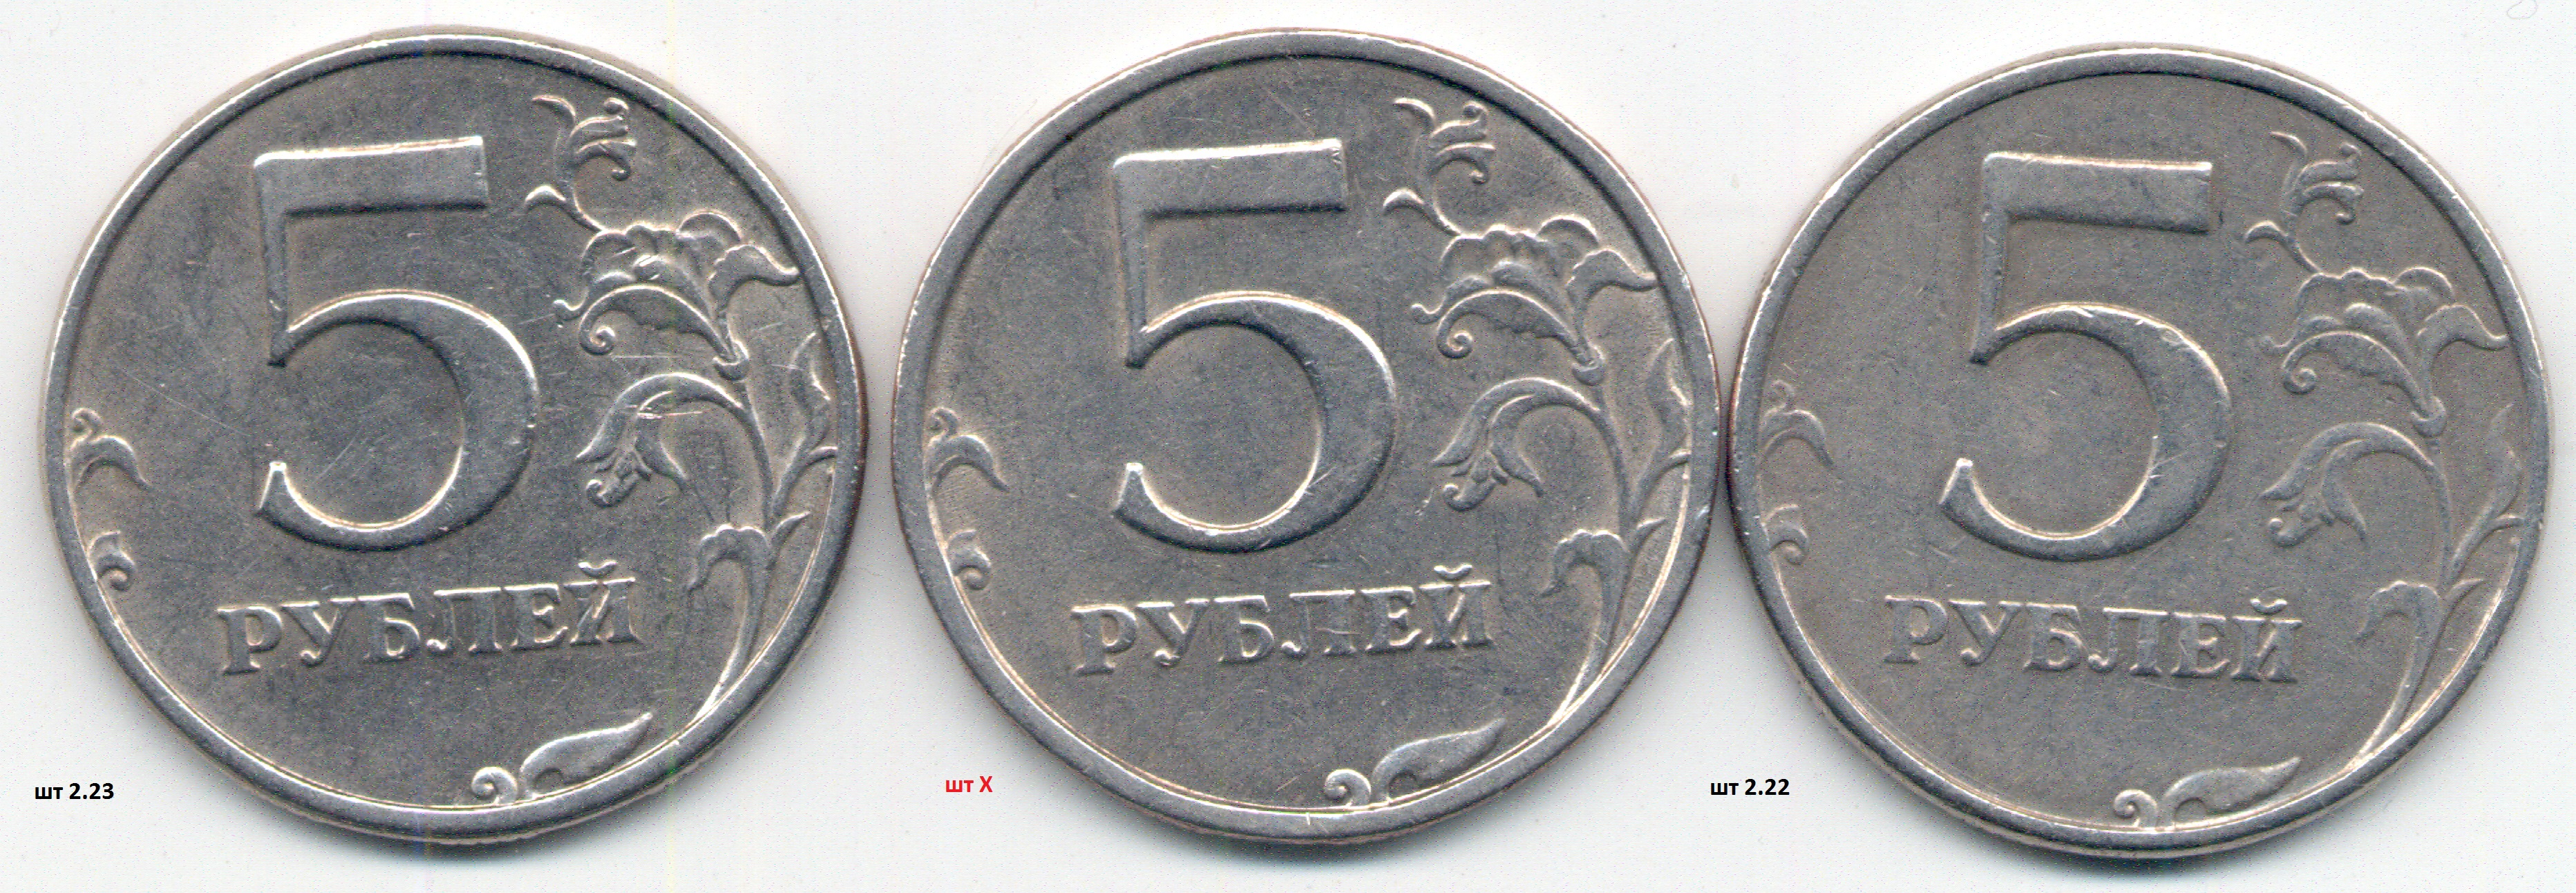 5 рублей магнитные. 5р 1997г СПМД. 5р 1997. Монета 5 рублей 2009 без борта. 13 Рублей 1998 года.